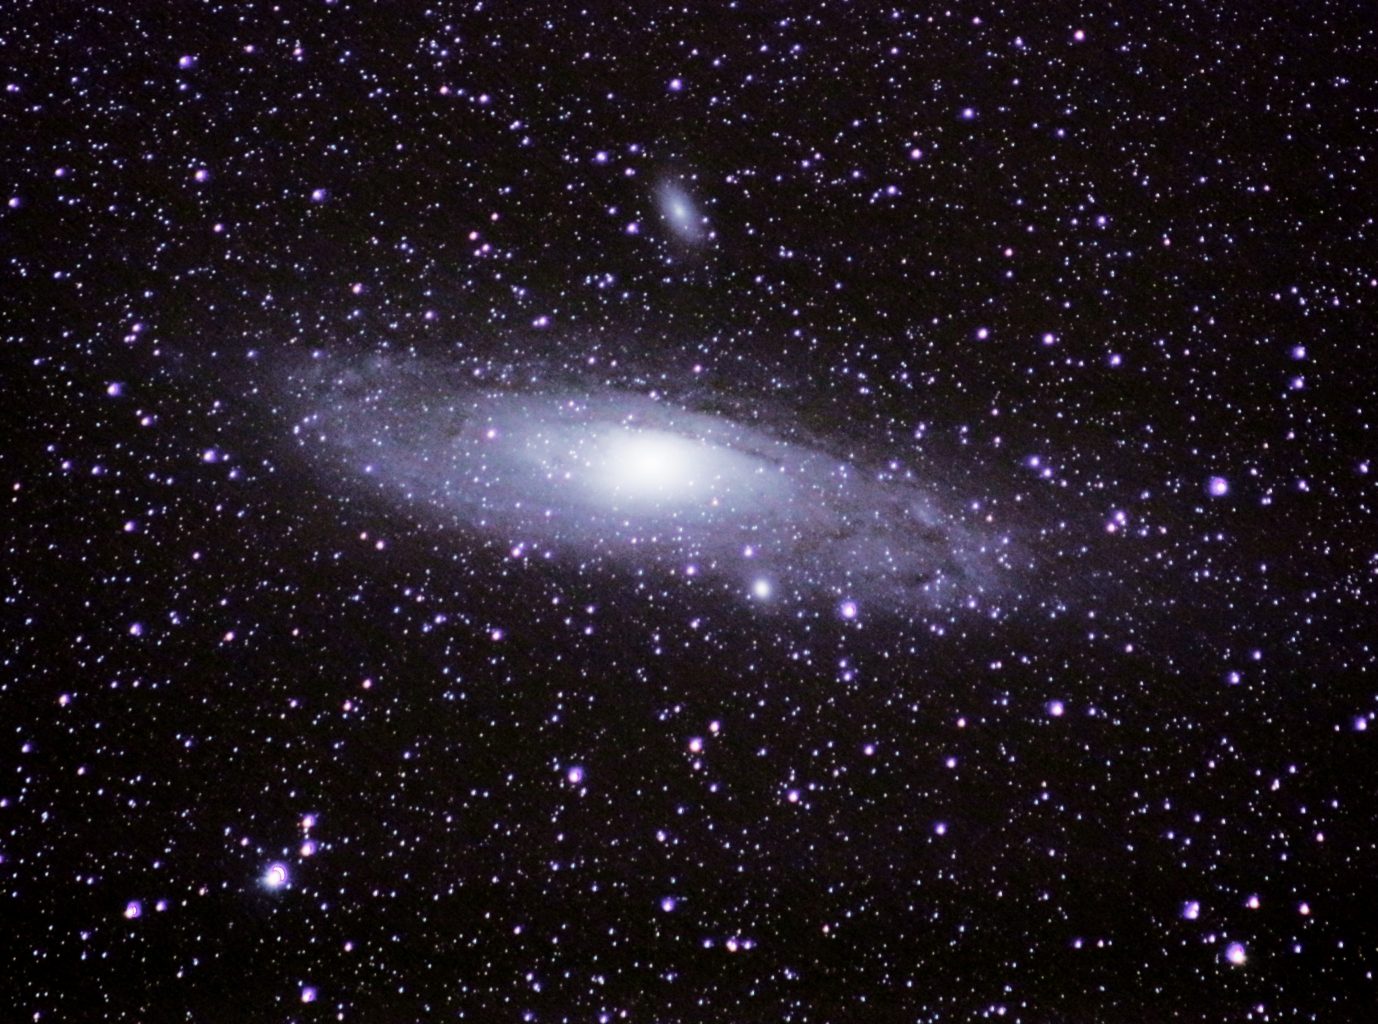 The Andromeda nebula